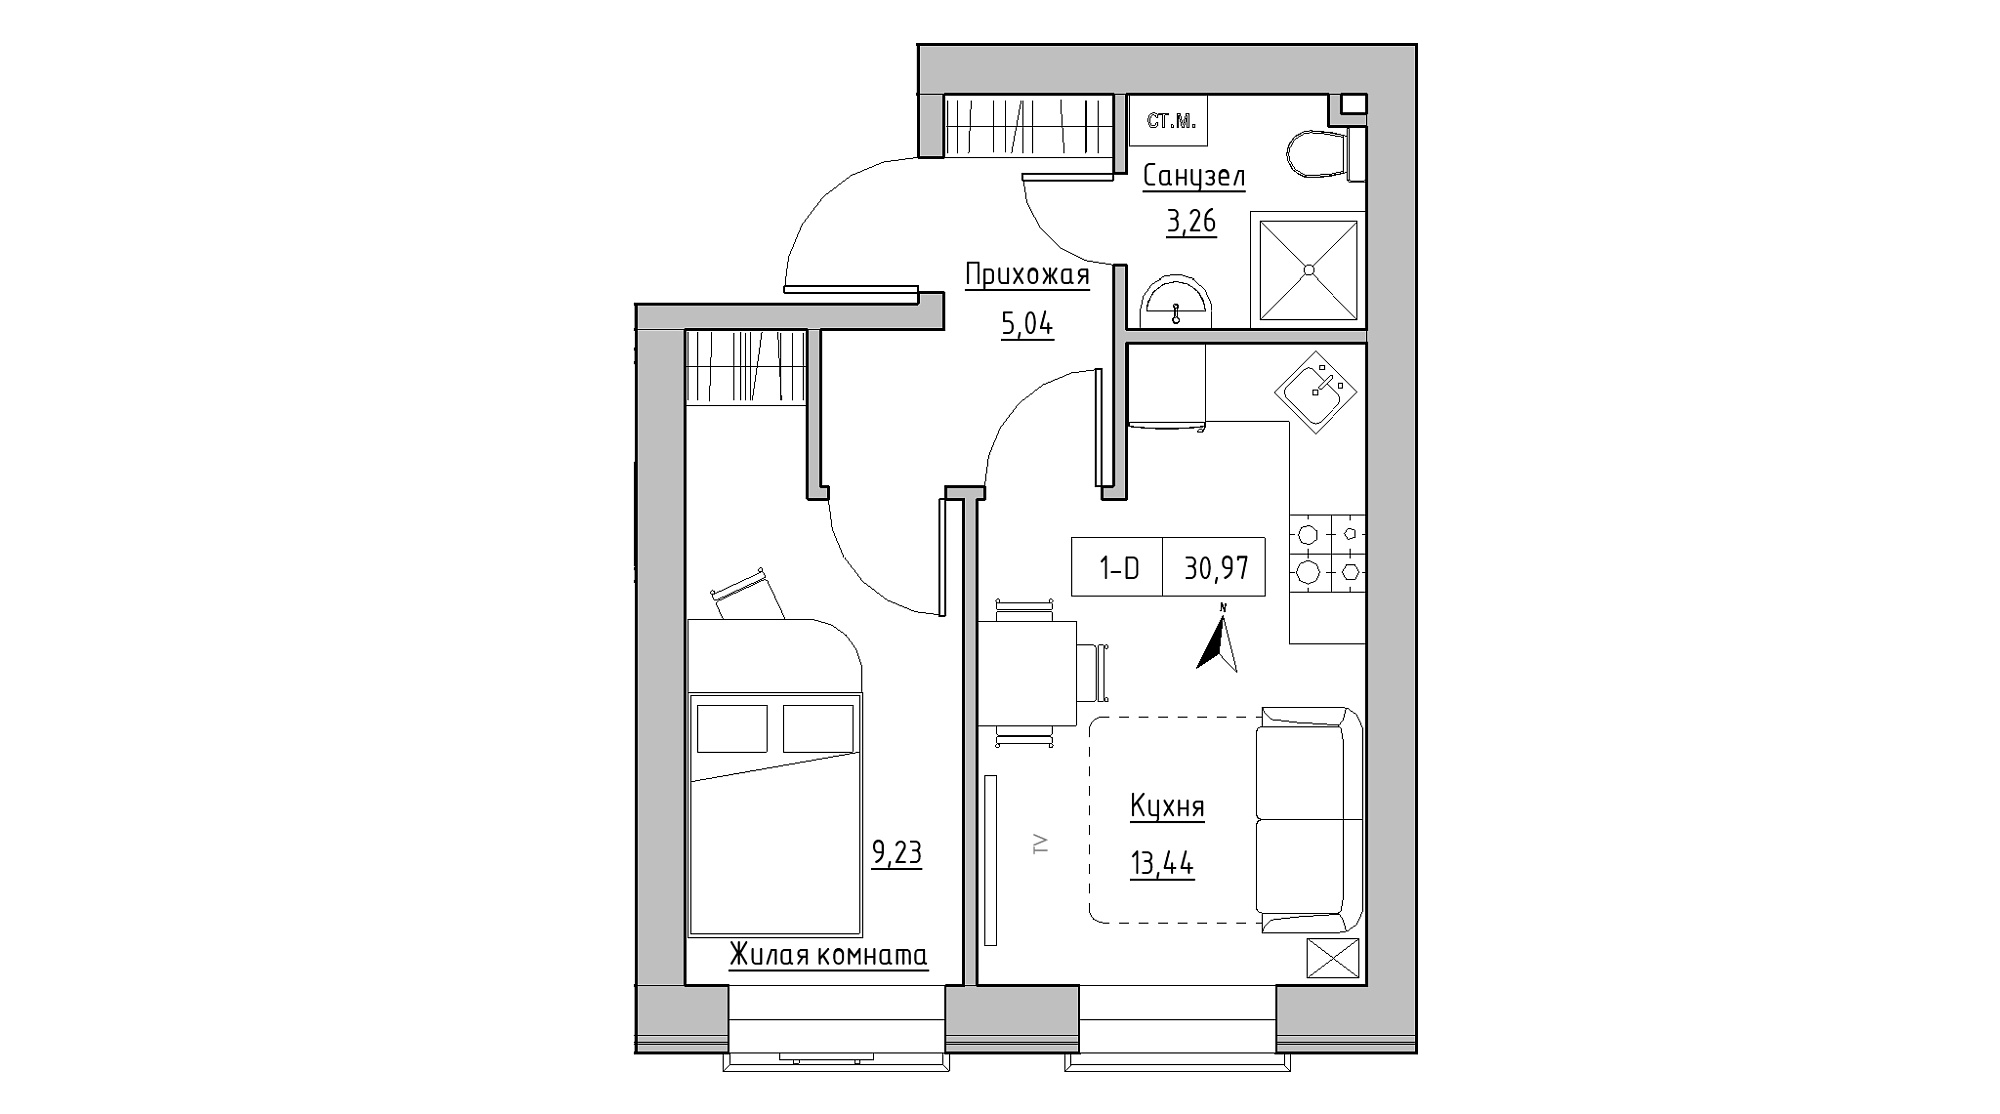 Планування 1-к квартира площею 30.97м2, KS-013-01/0011.